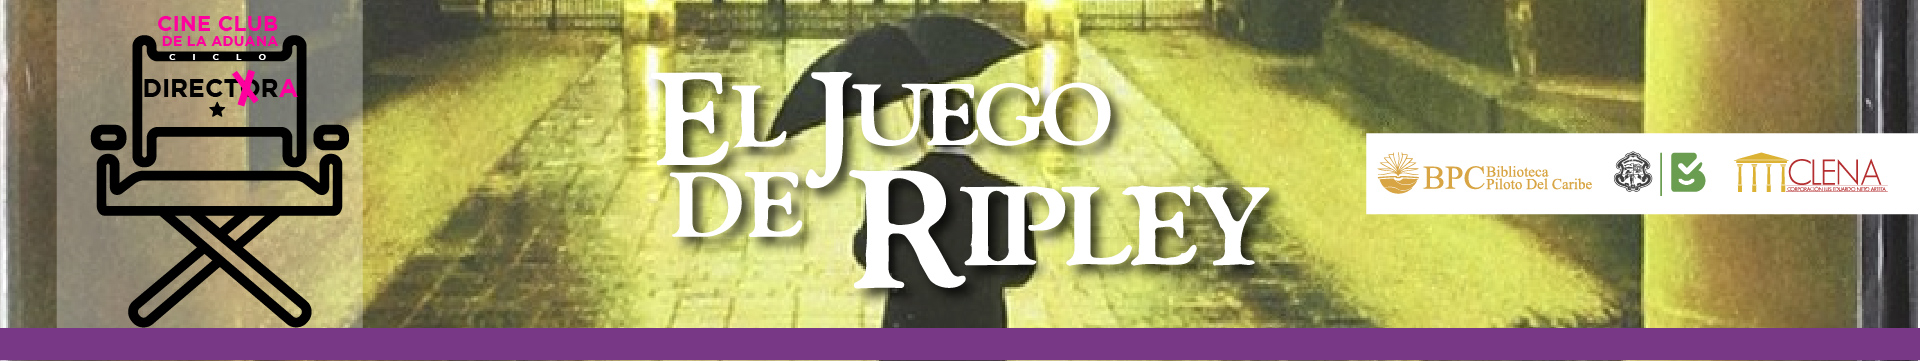 El Juego de Ripley - ¿Cuál es el Plan?